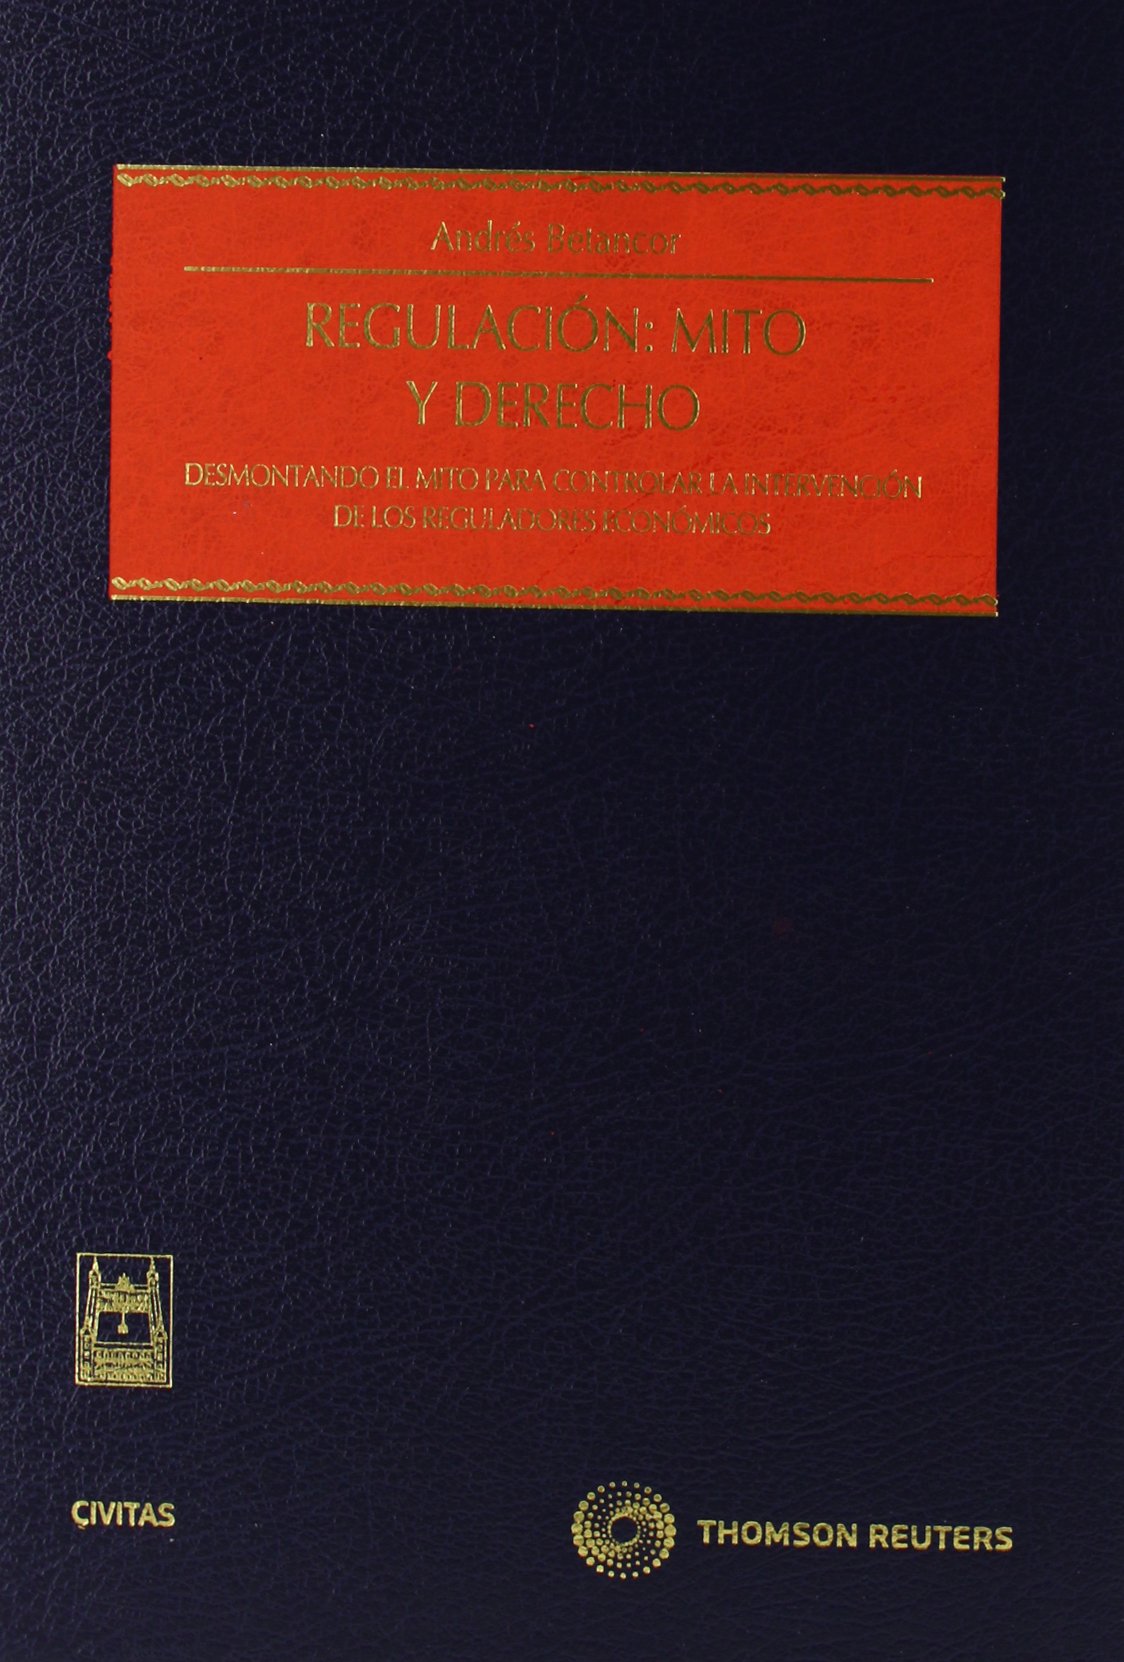 Imagen de portada del libro Regulación, mito y derecho